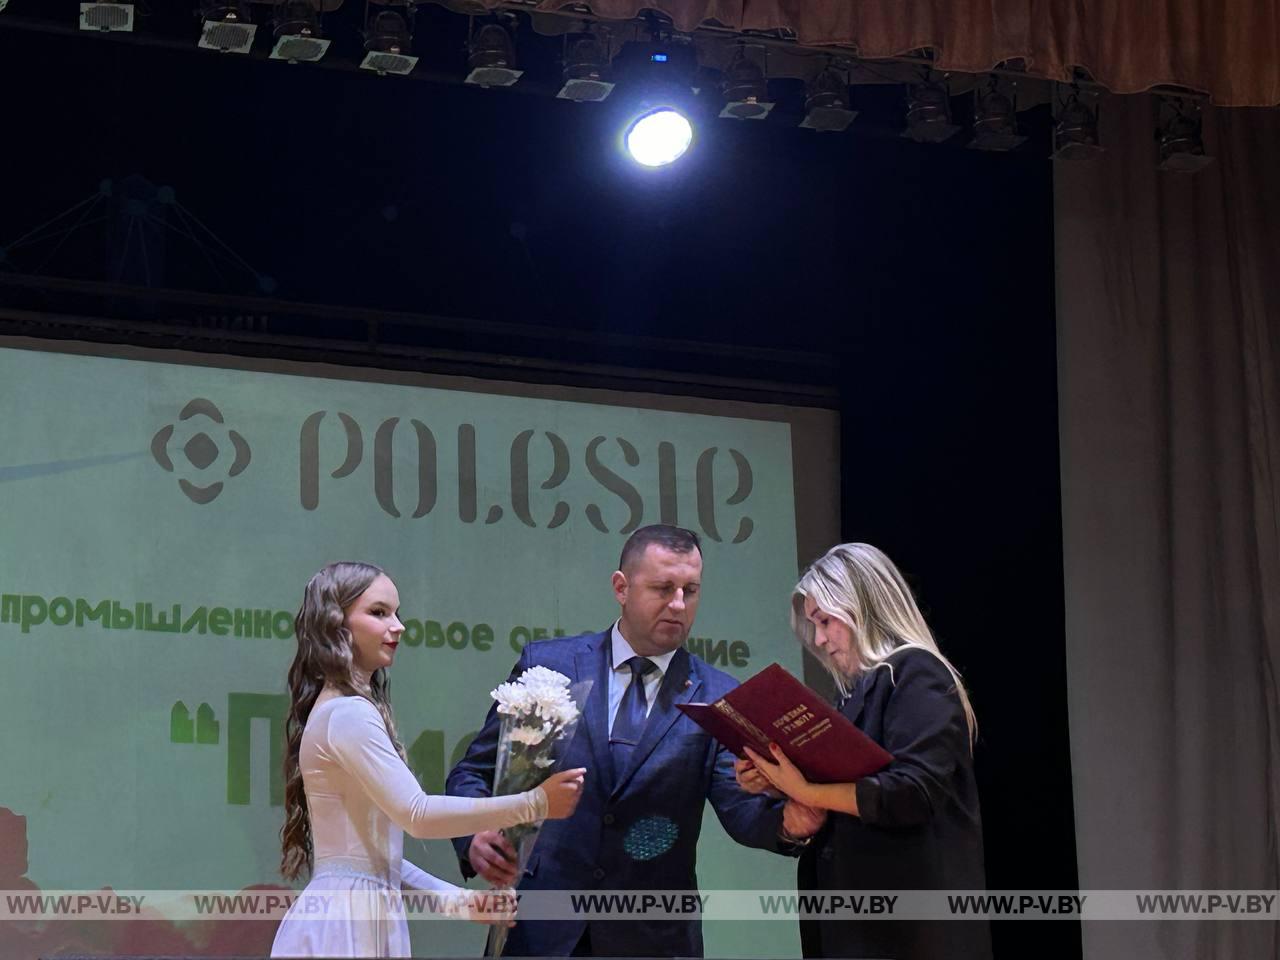 Побывали на торжественном концерте, посвященном 55-летию ОАО "Полесье"